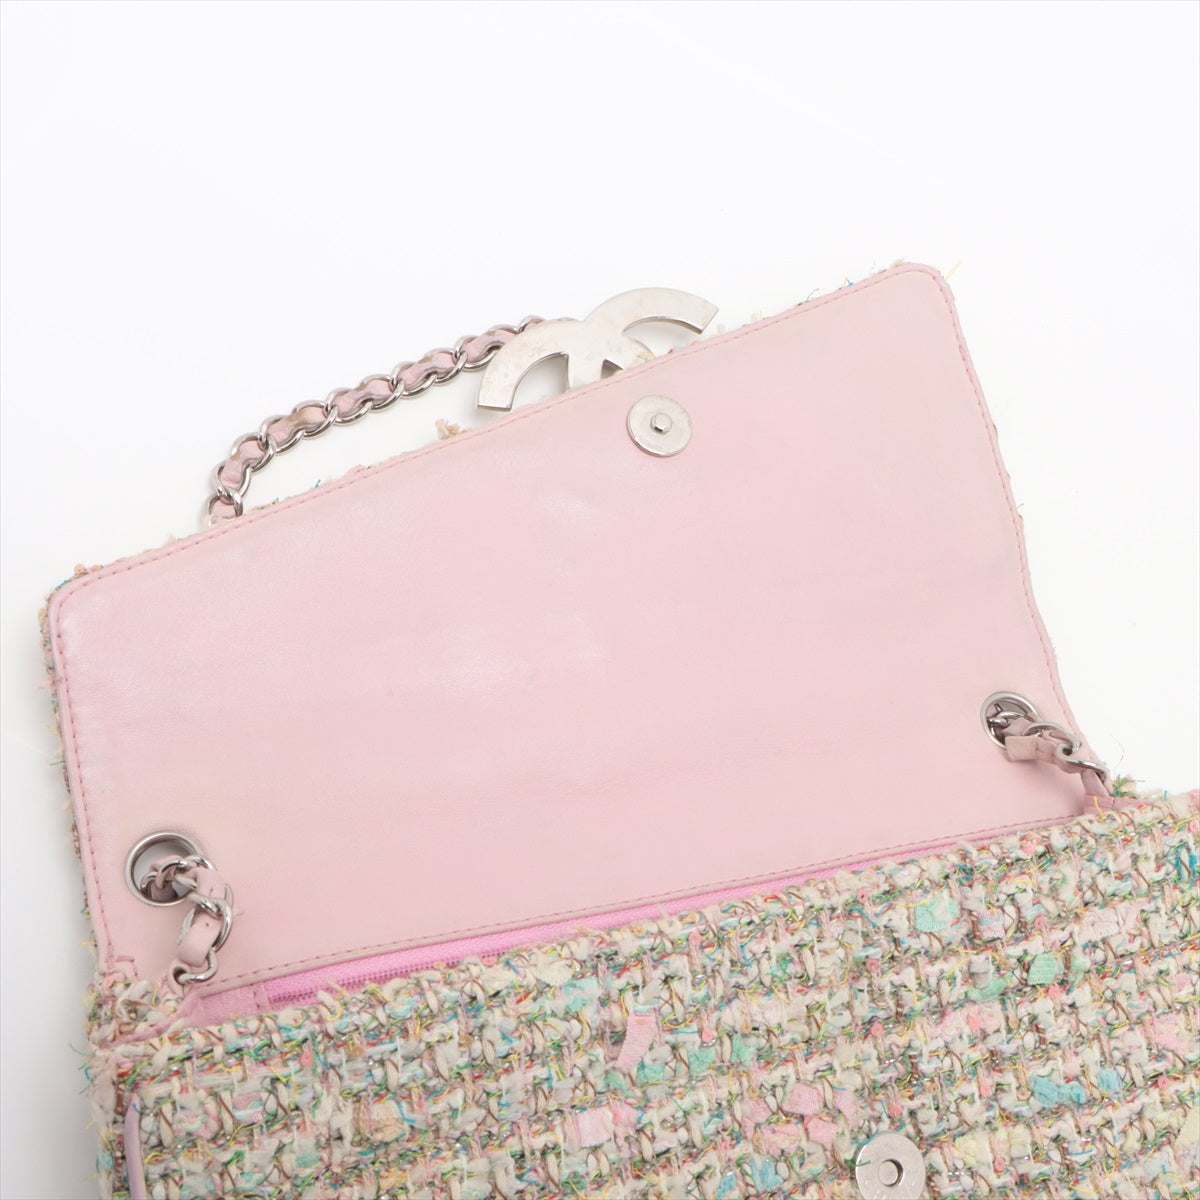 Chanel Coco Tweede Chain Shoulder Bag Multicolor Silver  9th